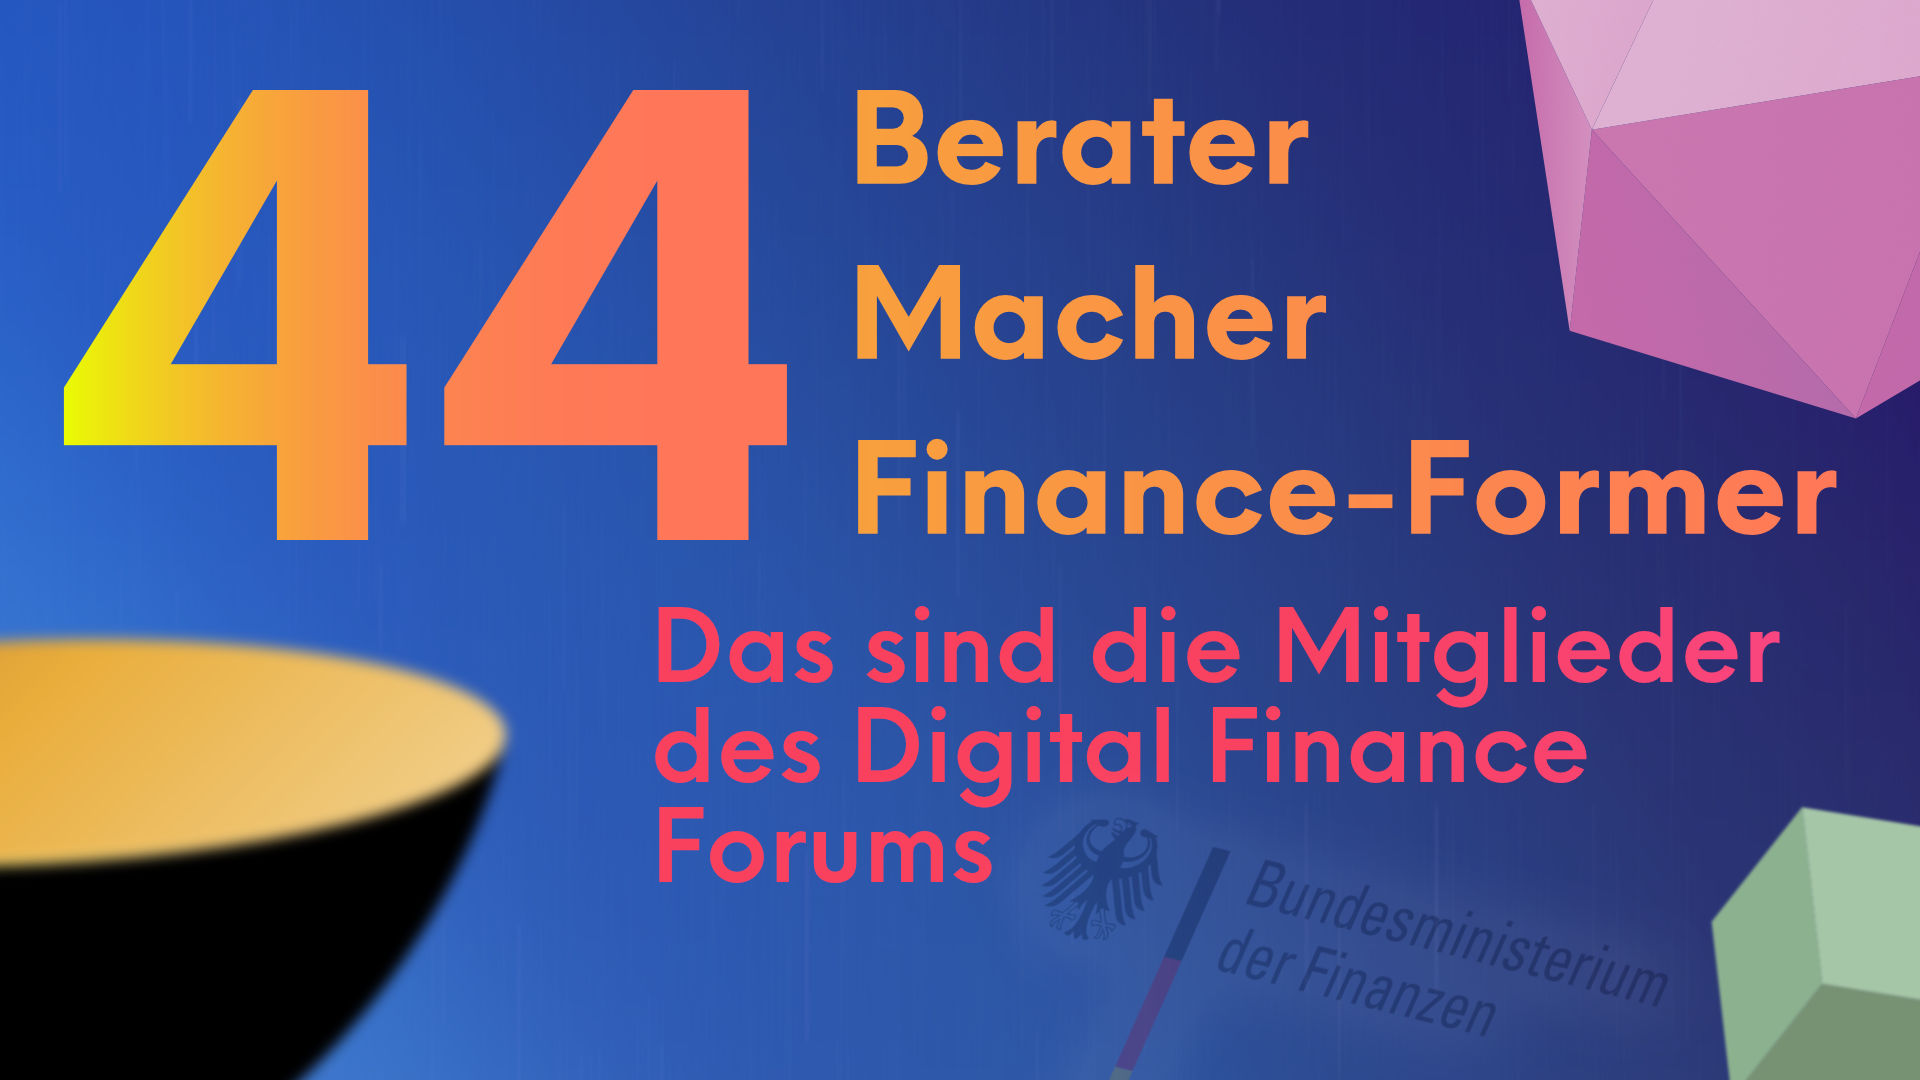 Digital Finance Forum 44 Mitglieder Header